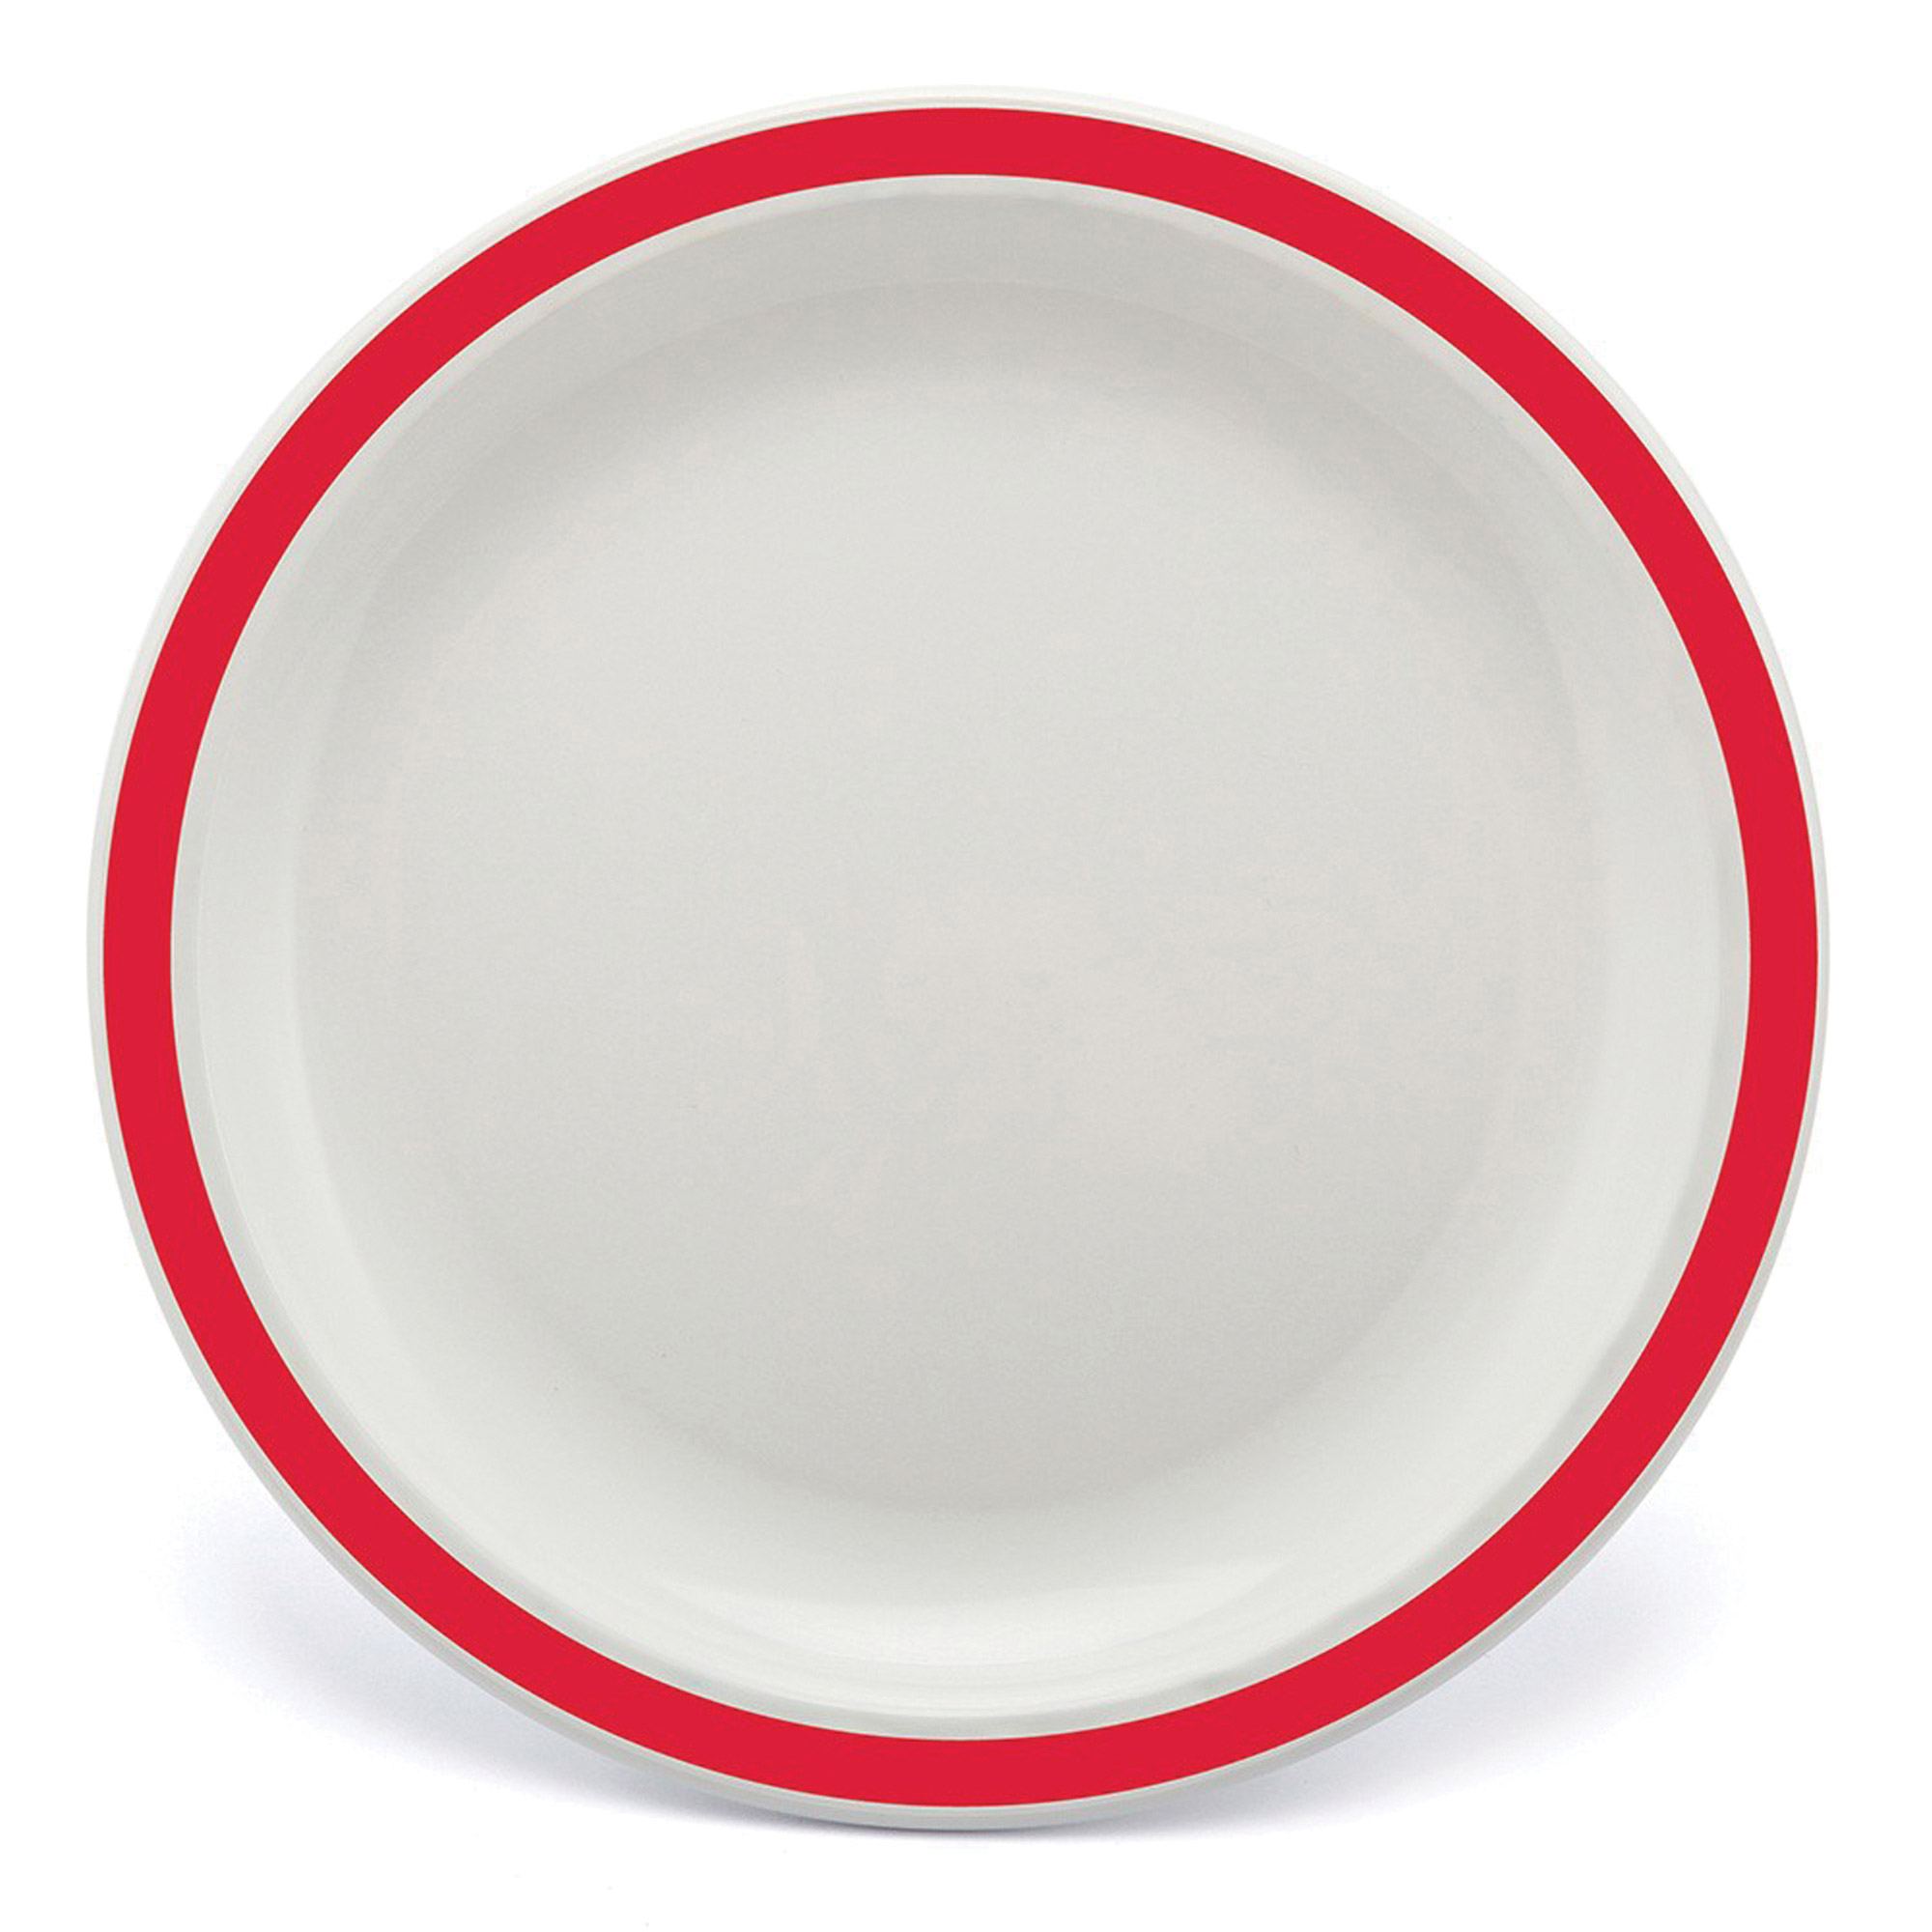 Polycarb White Dinner Plate Narrow Red Rim 23cm - Each